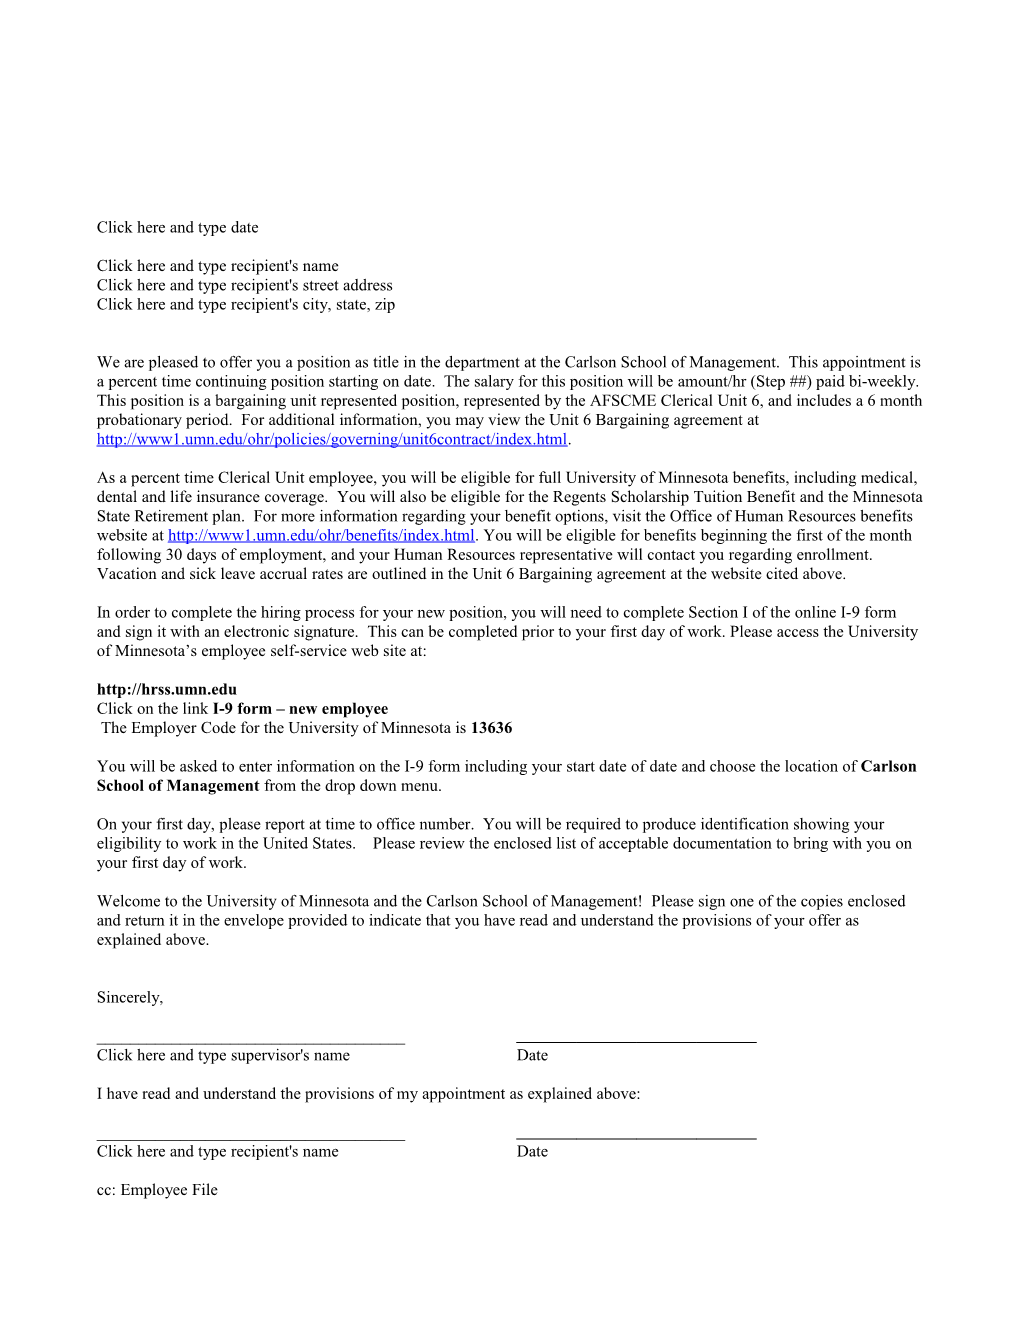 Bargaining Unit Offer Letter